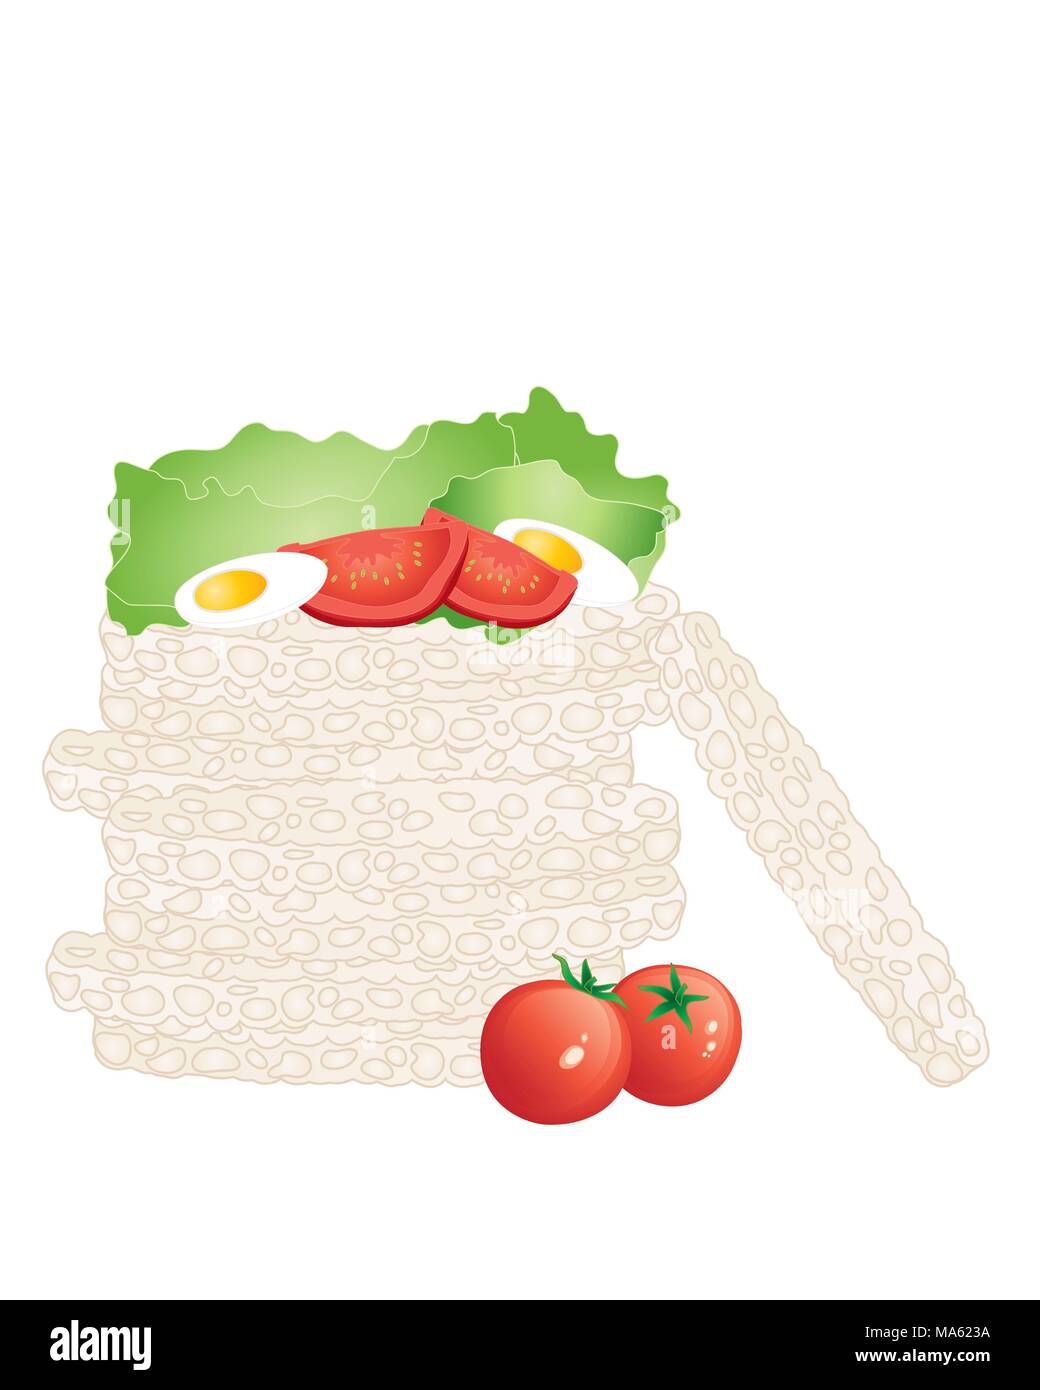 Ein Vektor Abbildung im EPS 10 Format von einem Haufen Reis Kuchen in einem Stack mit frischen Bio Tomaten Salat und Ei isoliert auf weißem Hintergrund Stock Vektor